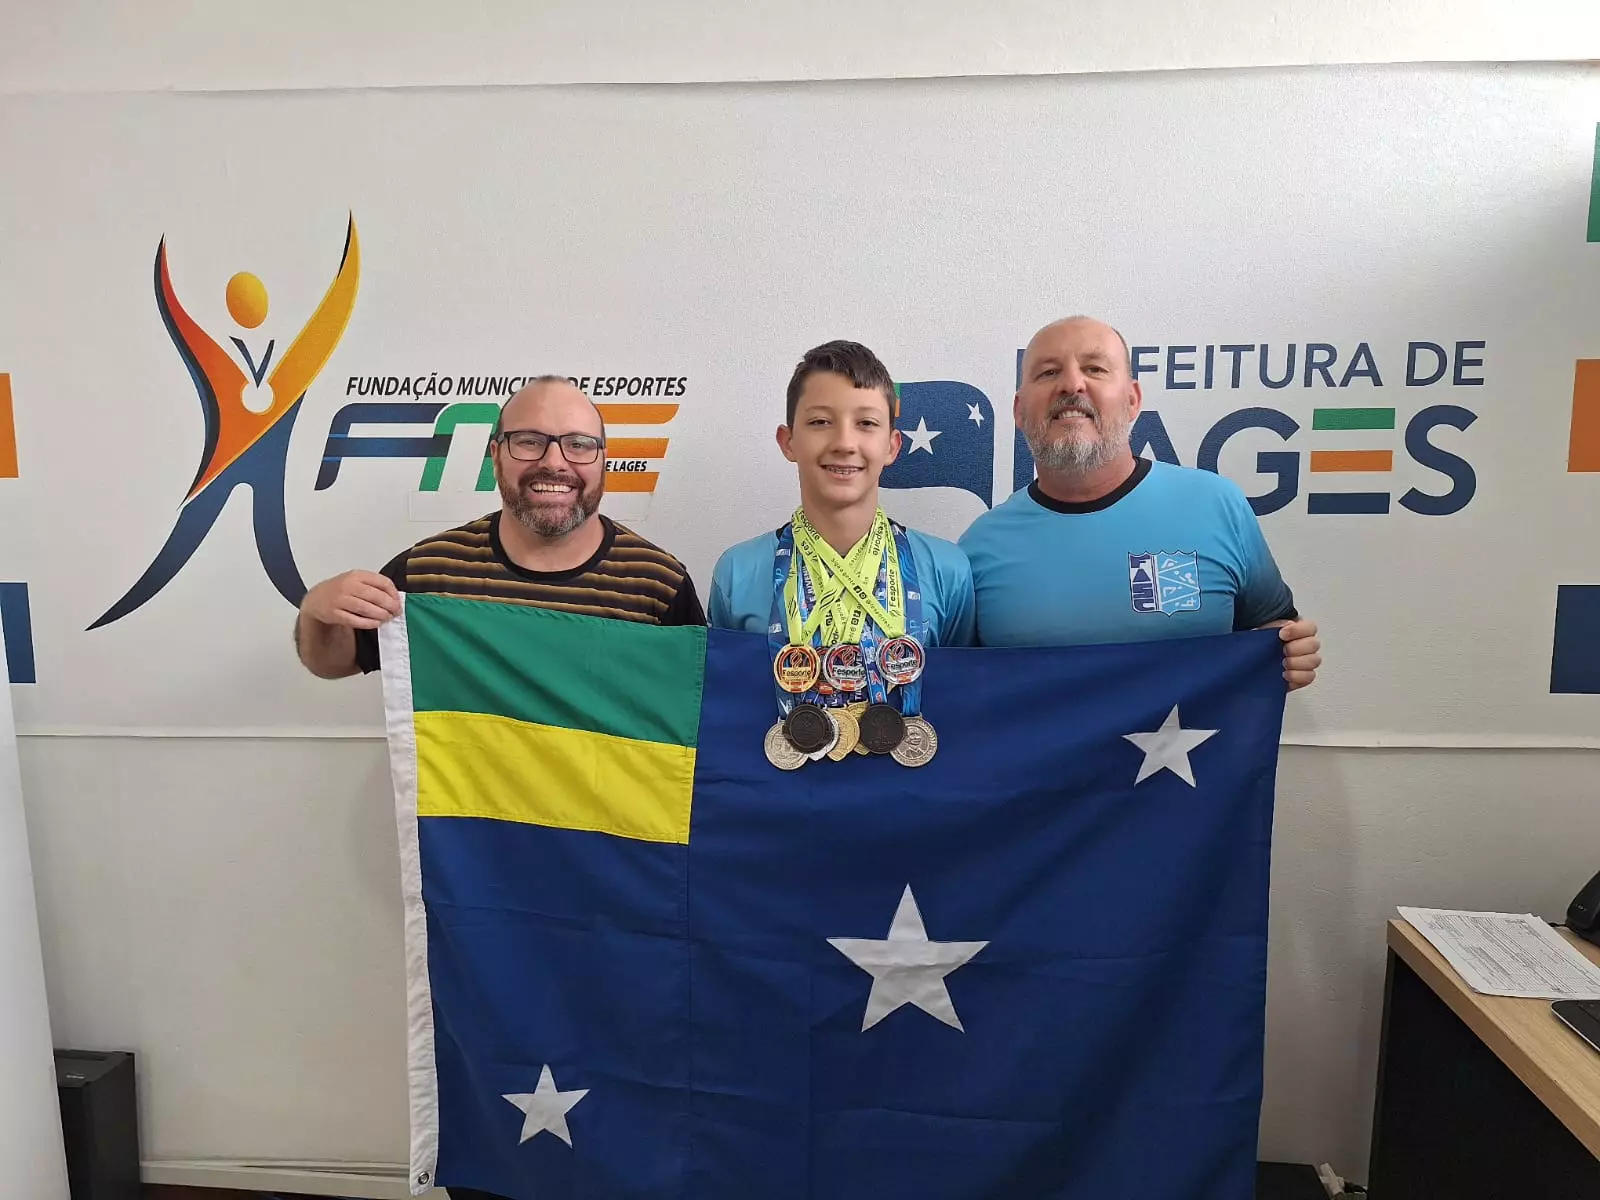 Fundação Municipal de Esportes de Lages Superintendente Renatinho recebe visita do bolsista-atleta Gabriel Oliveira Nerbass e seu Técnico Vander Gonsales